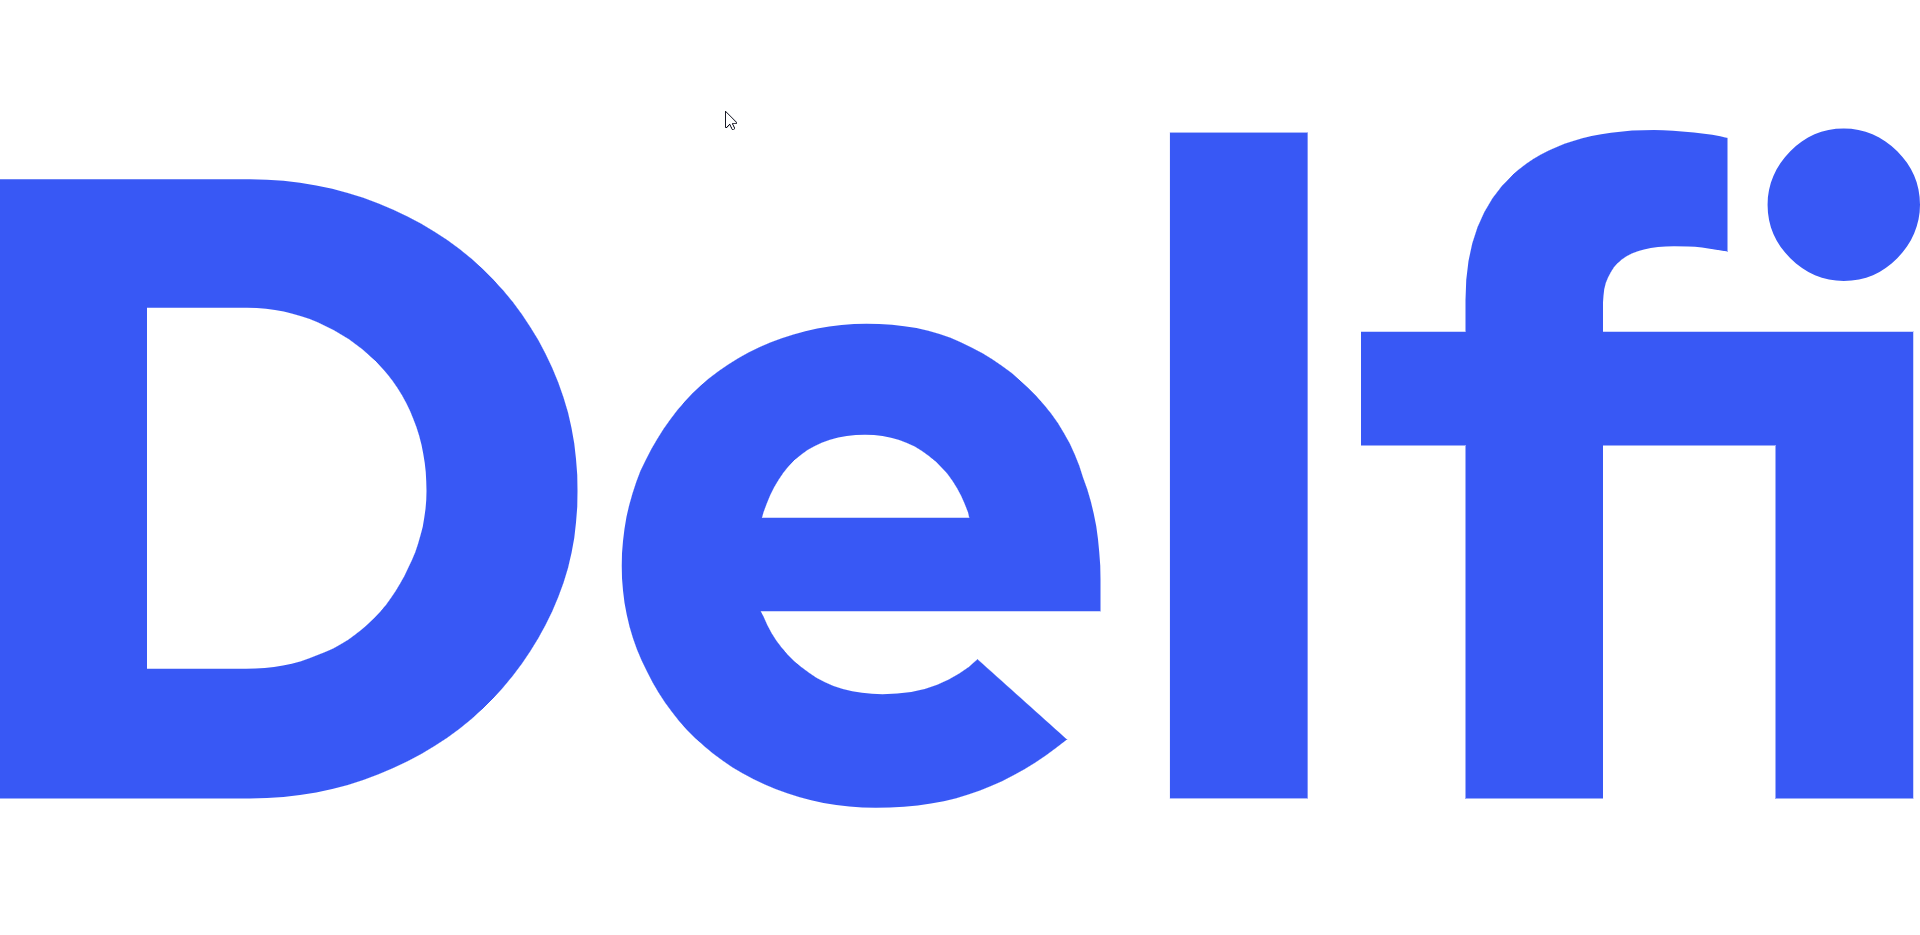 DELFI - Latvijas populārākais ziņu portāls. Aktuālās ziņas katru dienu, kā  arī daudz citu jaunumu un izklaides - lasi DELFI.